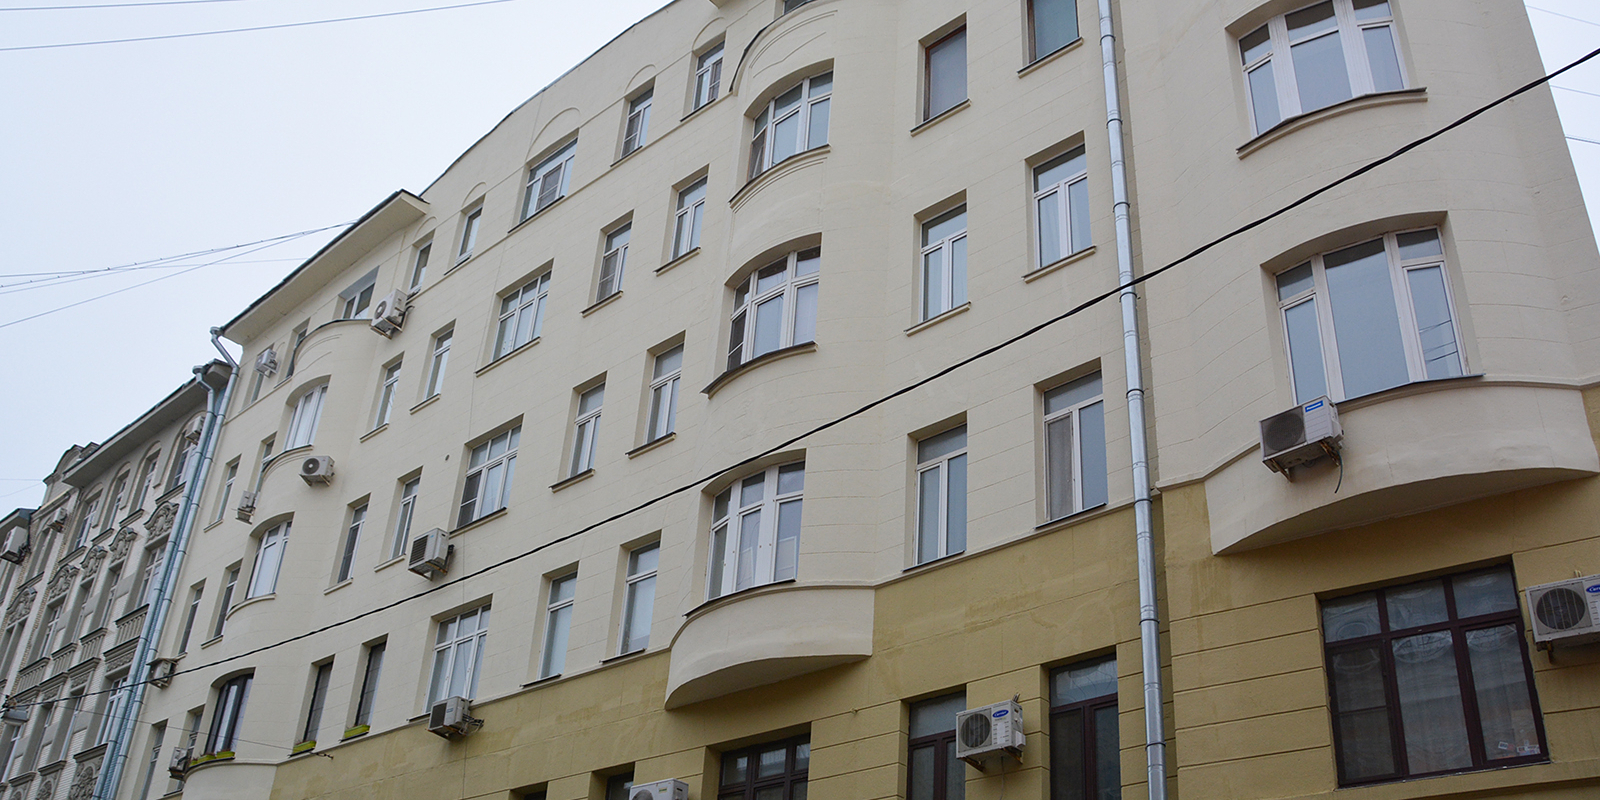 Специалисты осмотрели жилые здания района. Фото: сайт мэра Москвы